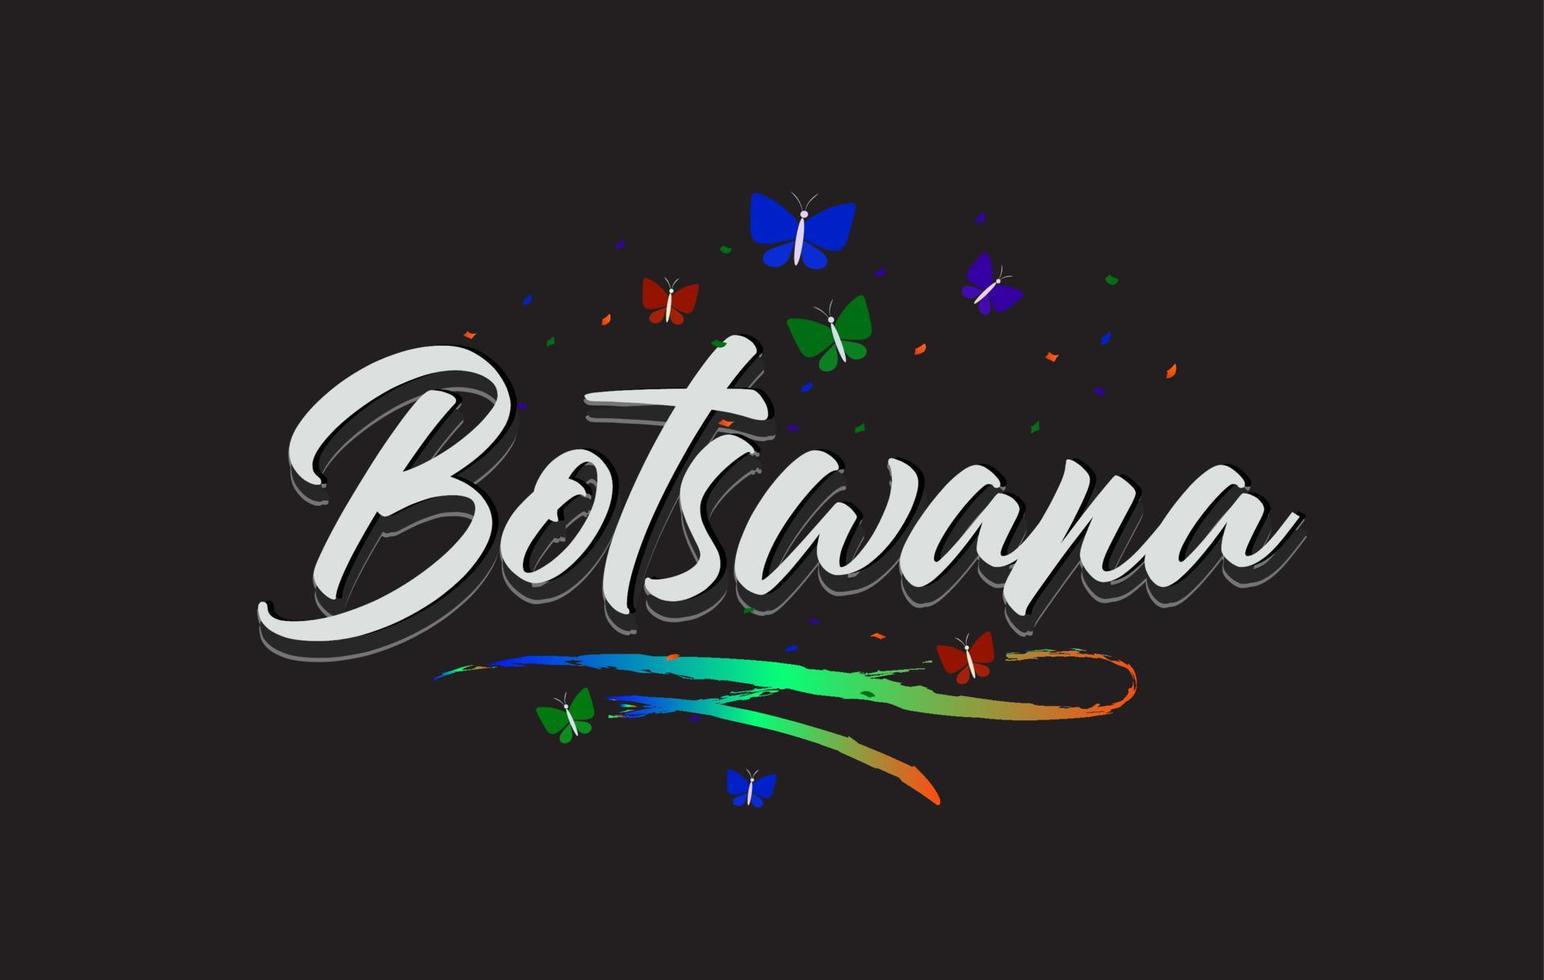 texto de palavra vetorial manuscrita de botswana branco com borboletas e swoosh colorido. vetor